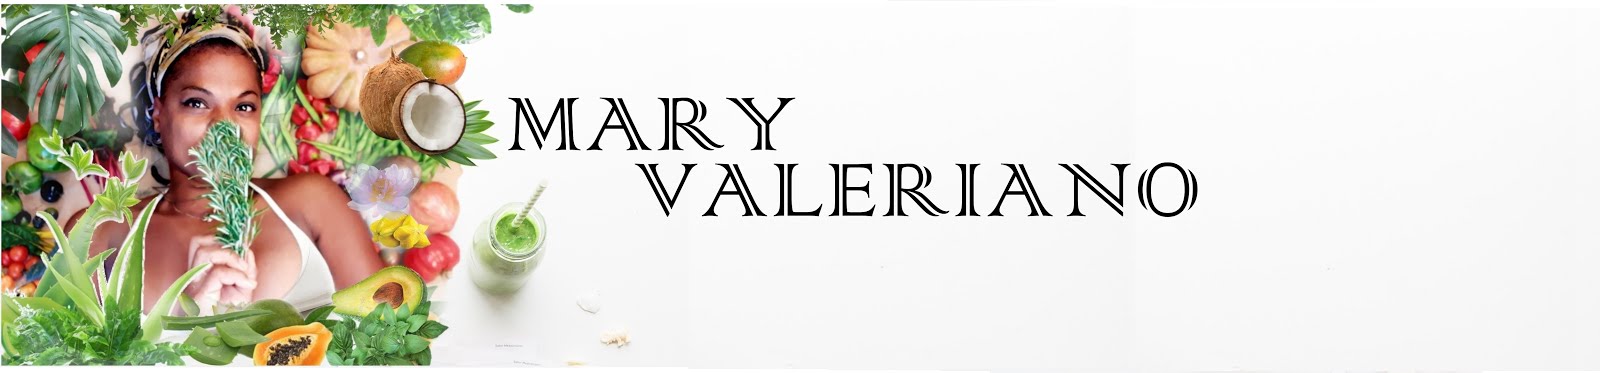 MARY VALERIANO